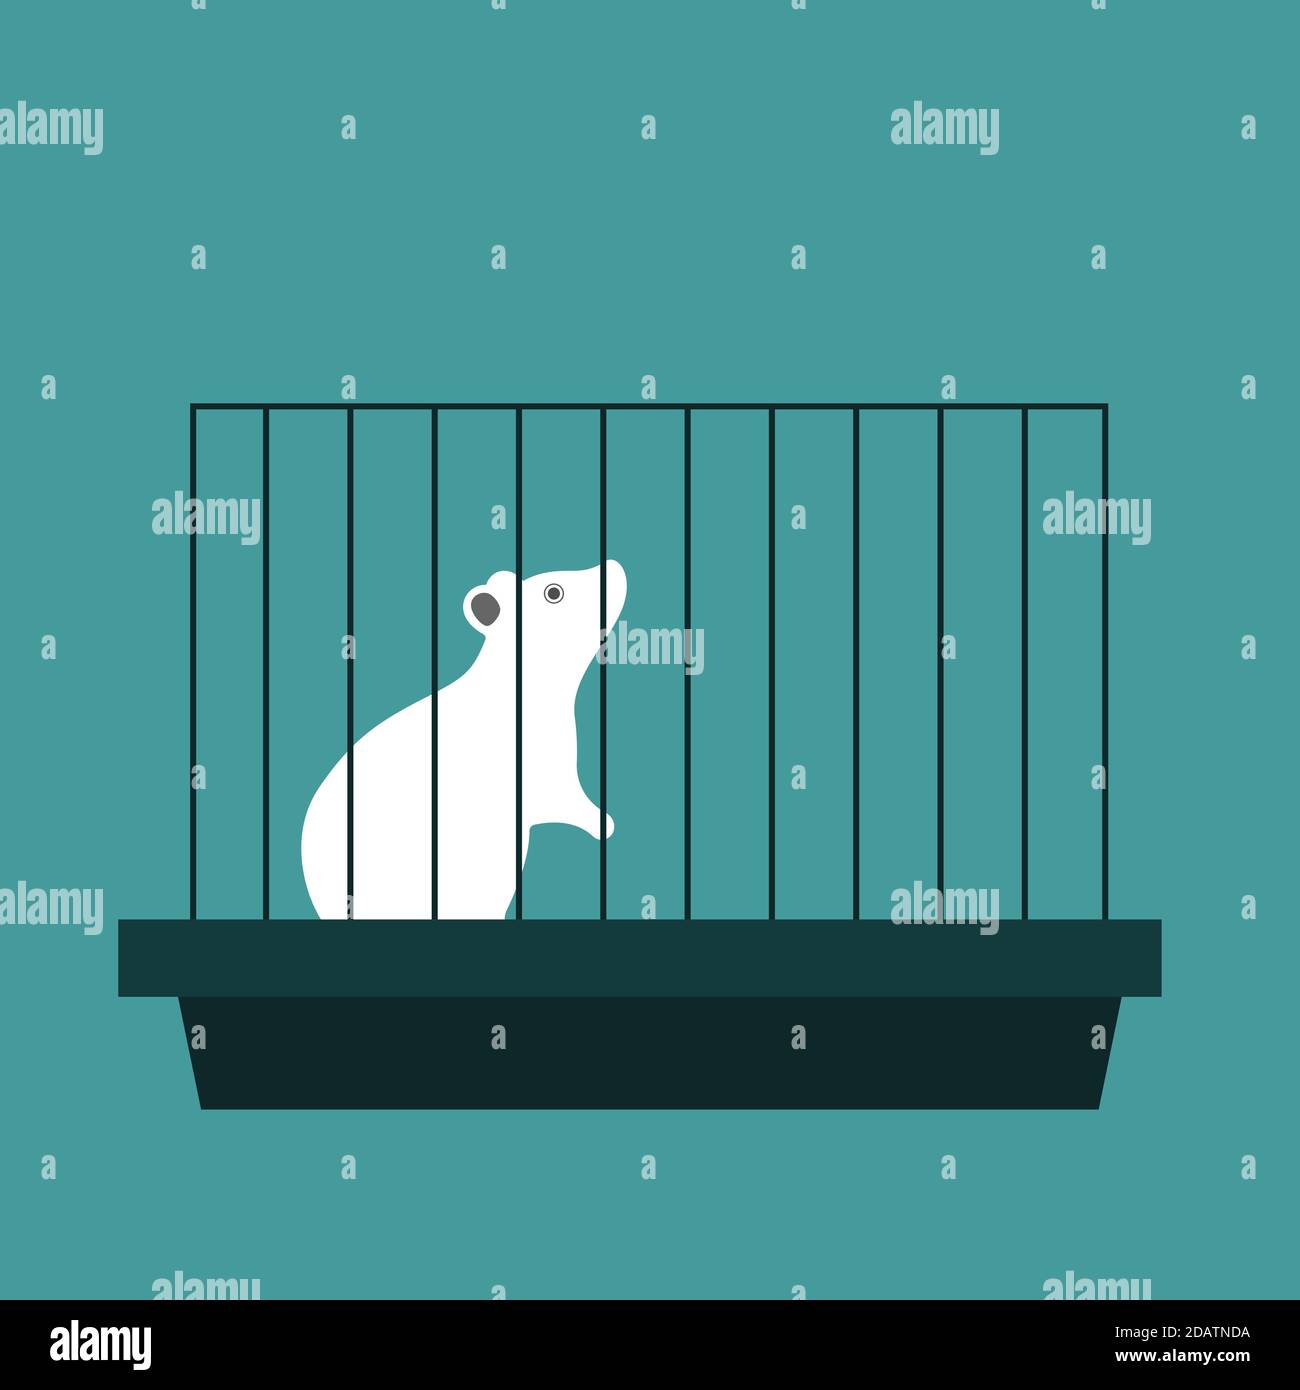 Experimentelle Labor weiße Maus in einem Käfig. Flache Vektor-Illustration auf blauem Hintergrund Stock Vektor